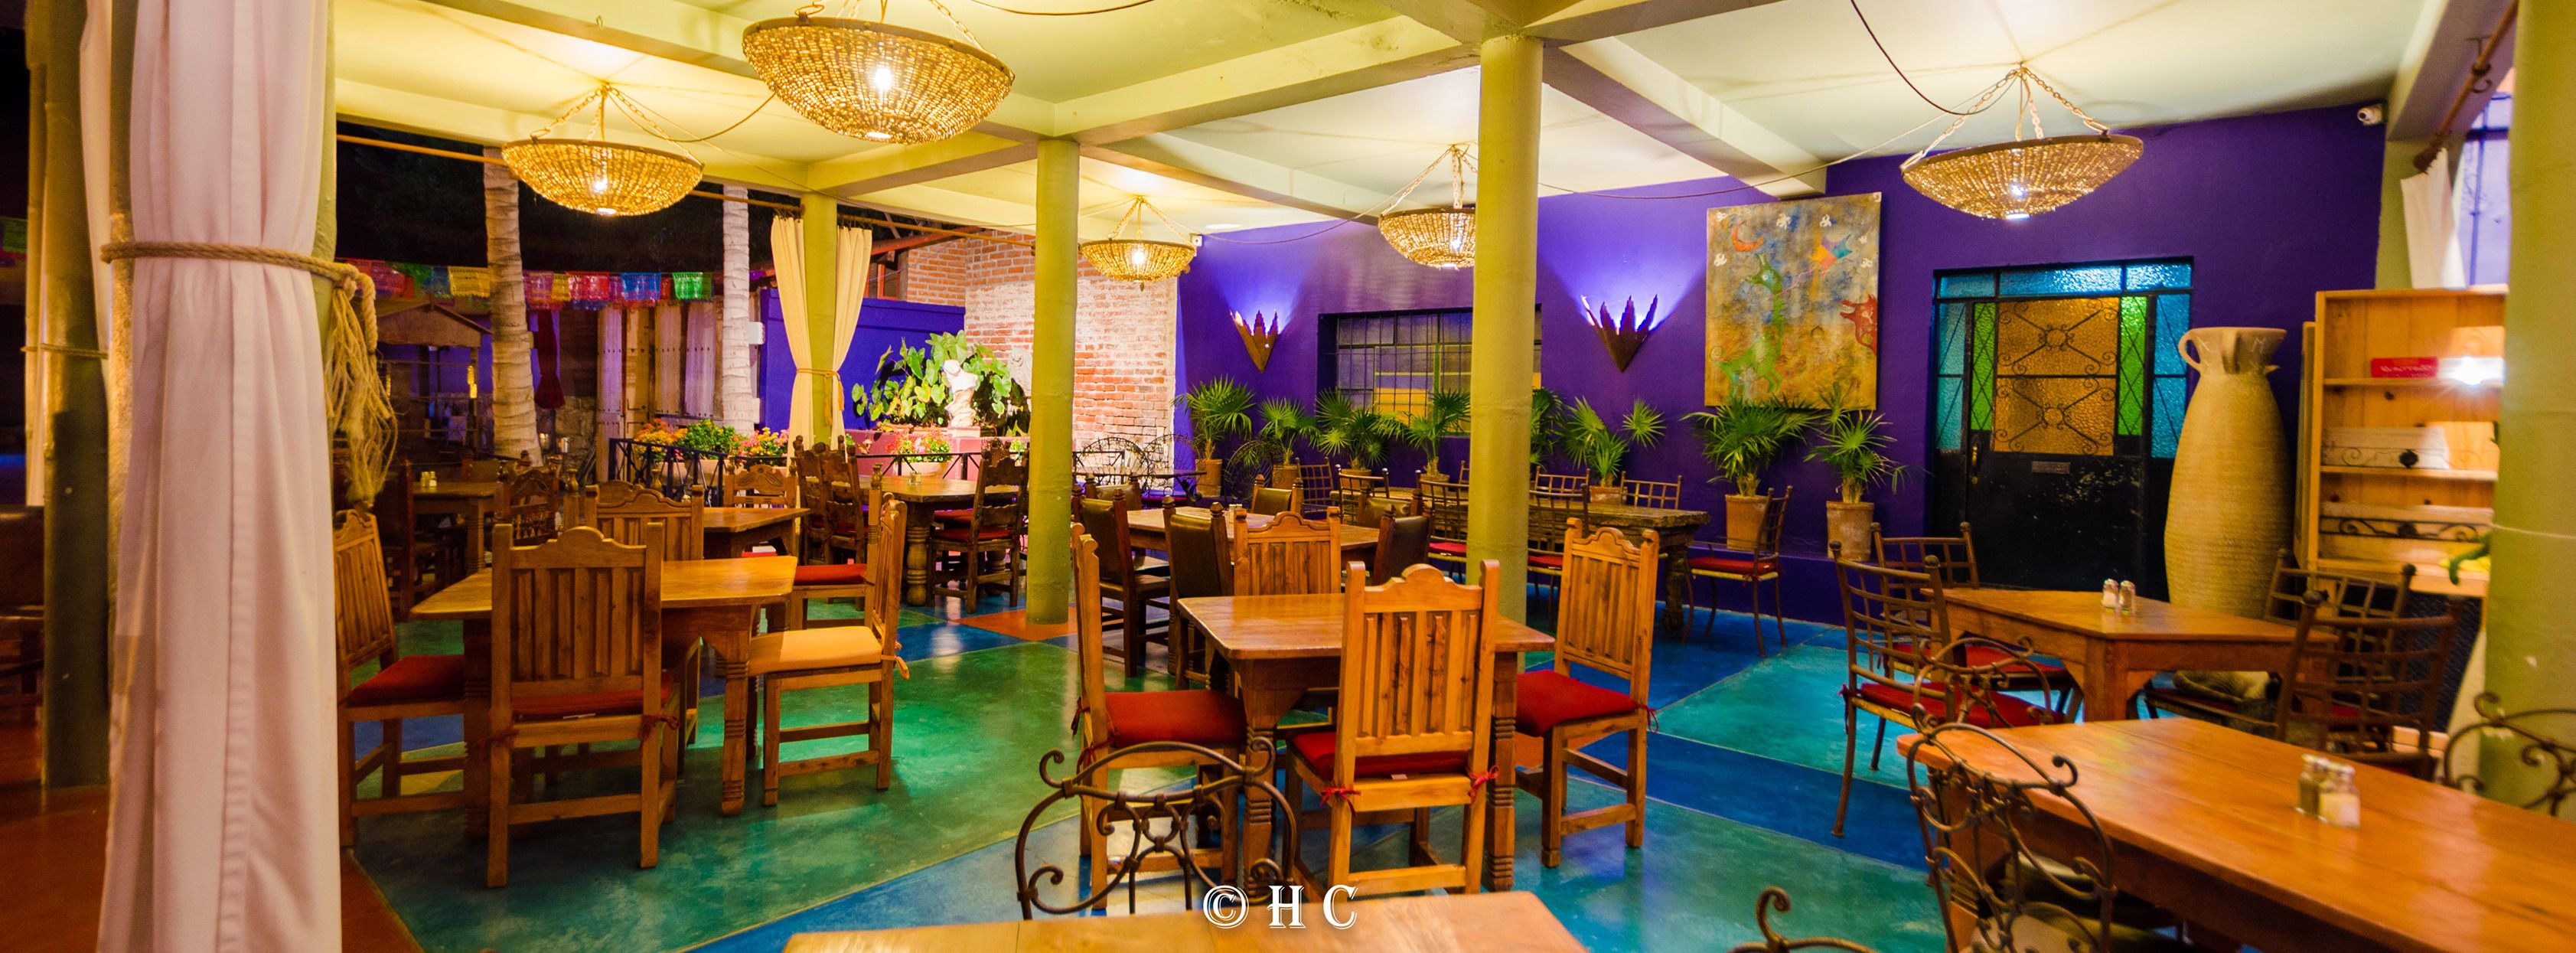 Así luce el restaurante dentro del Hotel California. (Facebook: Hotel California)